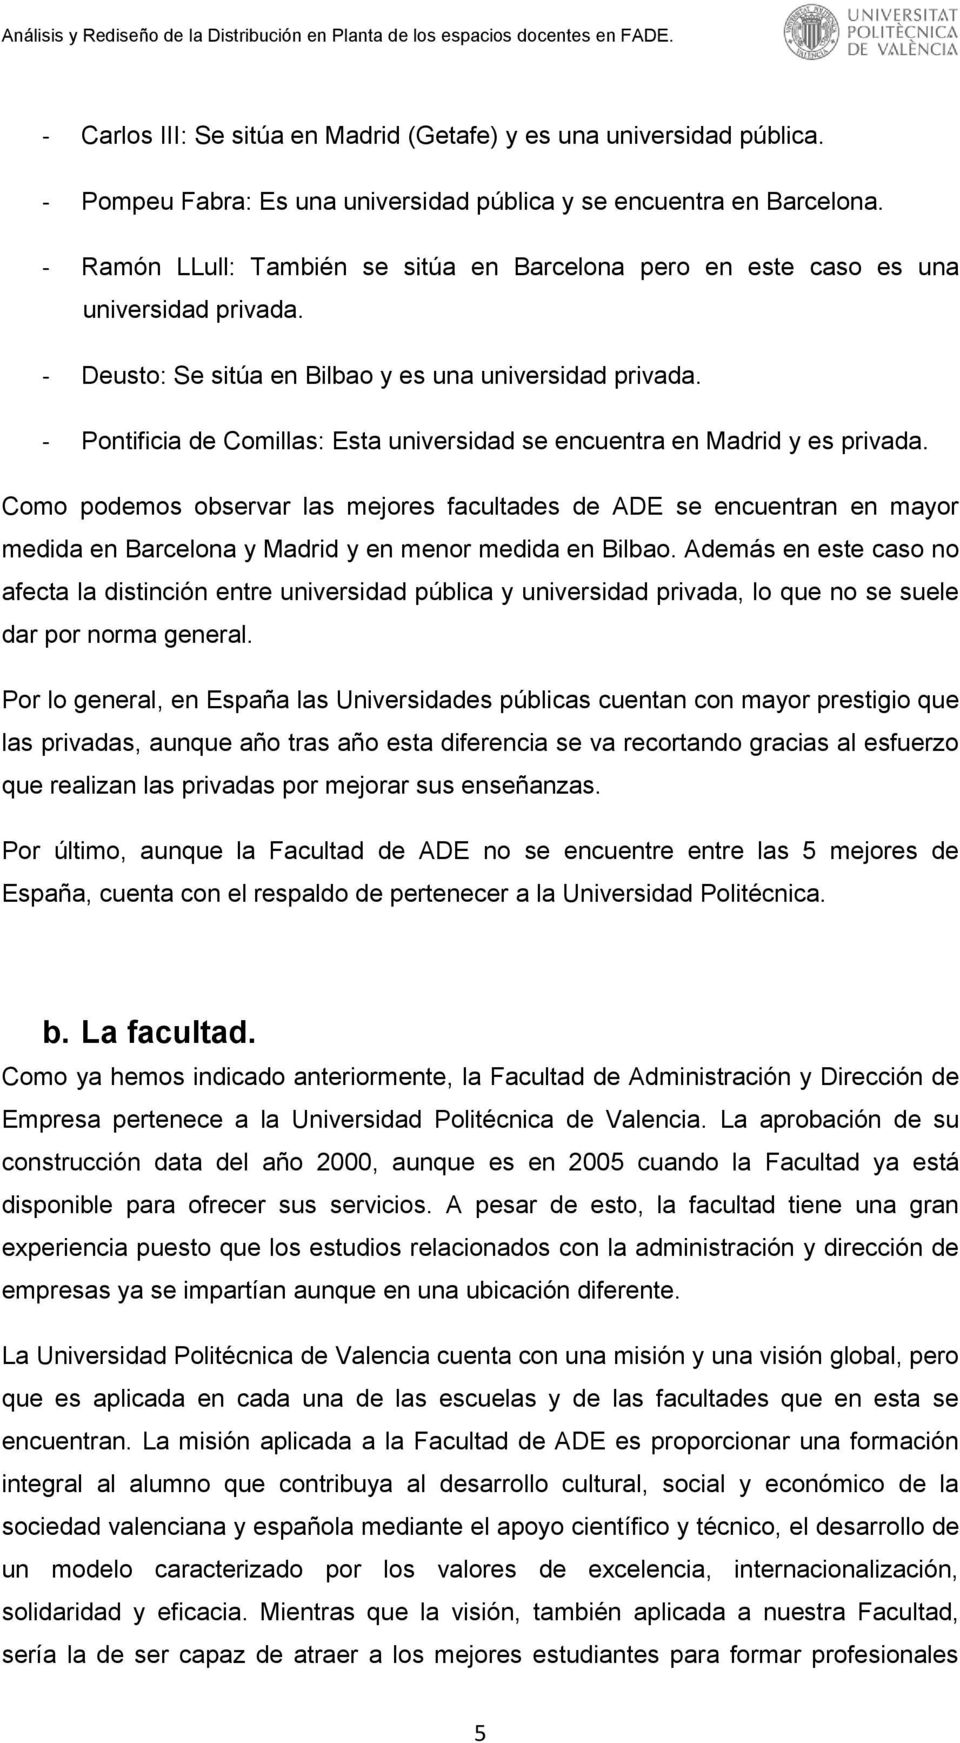 - Pontificia de Comillas: Esta universidad se encuentra en Madrid y es privada.